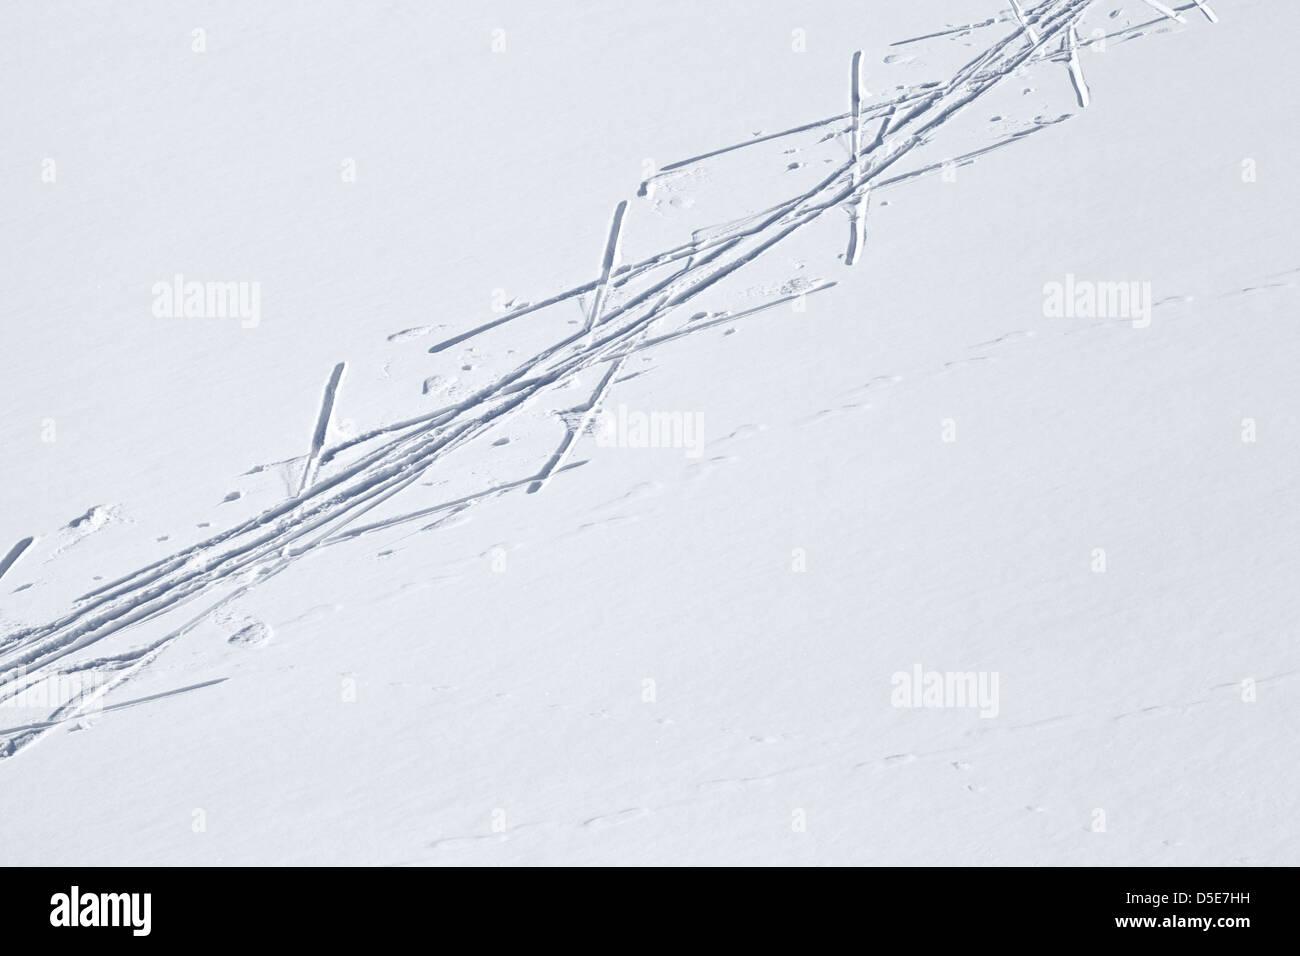 Pista de esquí campo nevado. Fondo de deportes de invierno, esquí cross-country Foto de stock